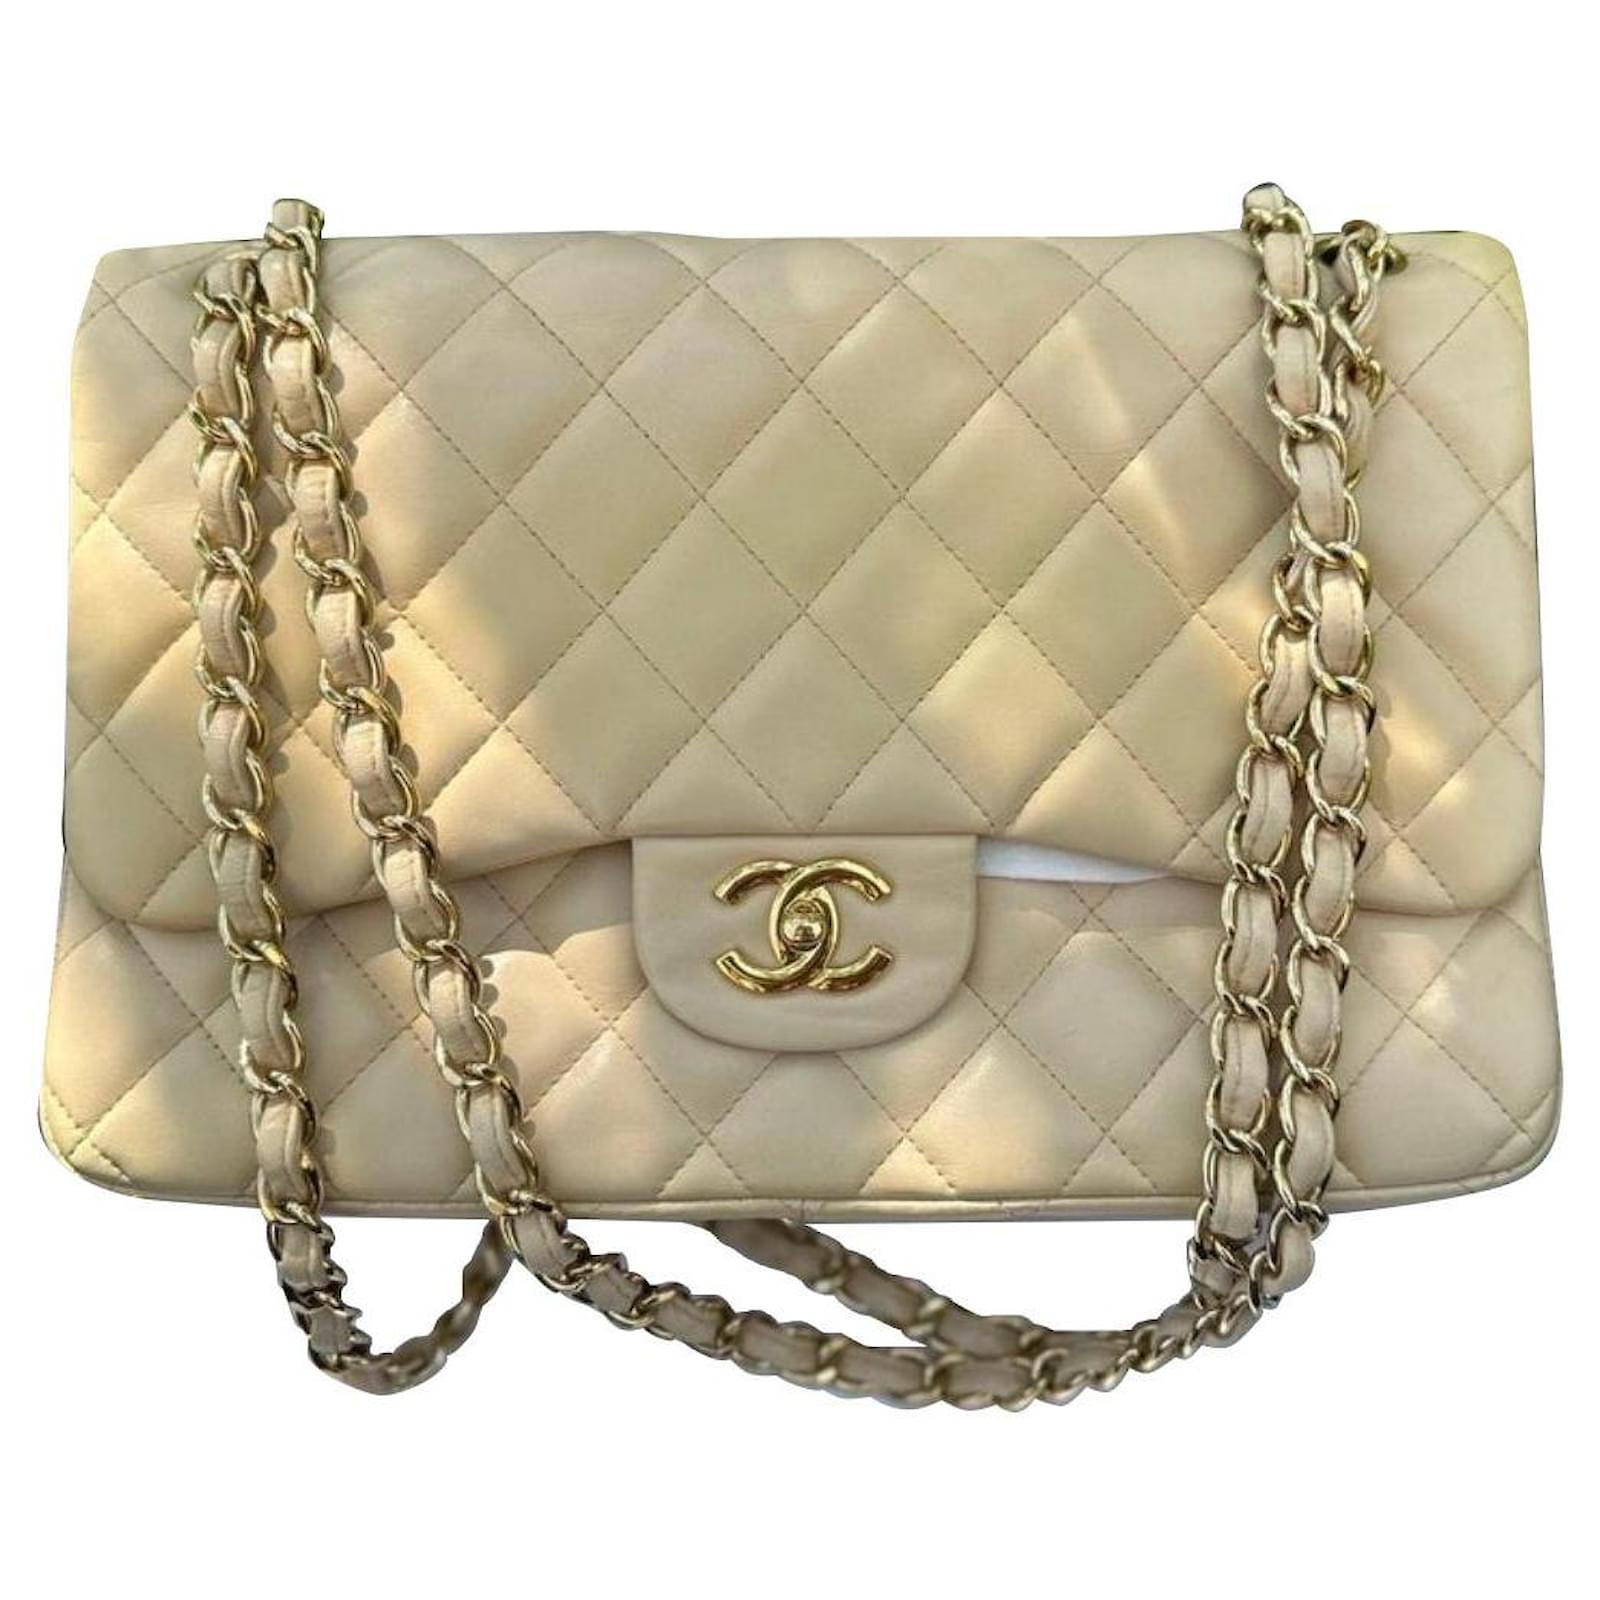 Chanel Jumbo Leather Maxi Bag